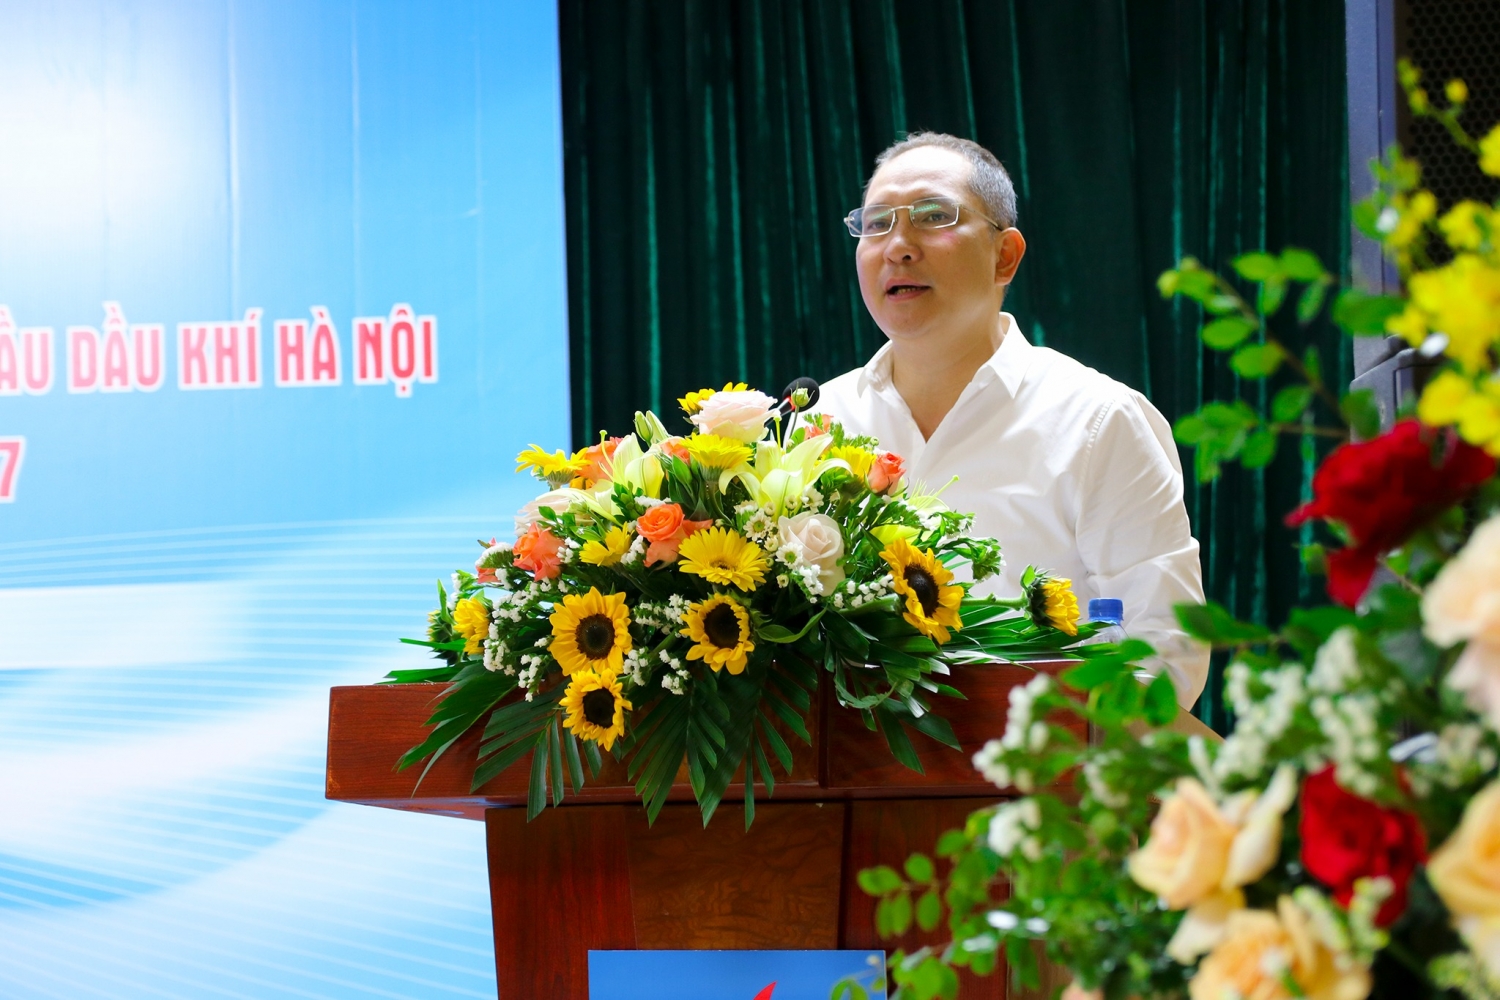 ồng chí Trần Mạnh Hà – Bí thư Đảng ủy, Giám đốc Công ty phát biểu chỉ đạo tại Đại hội.